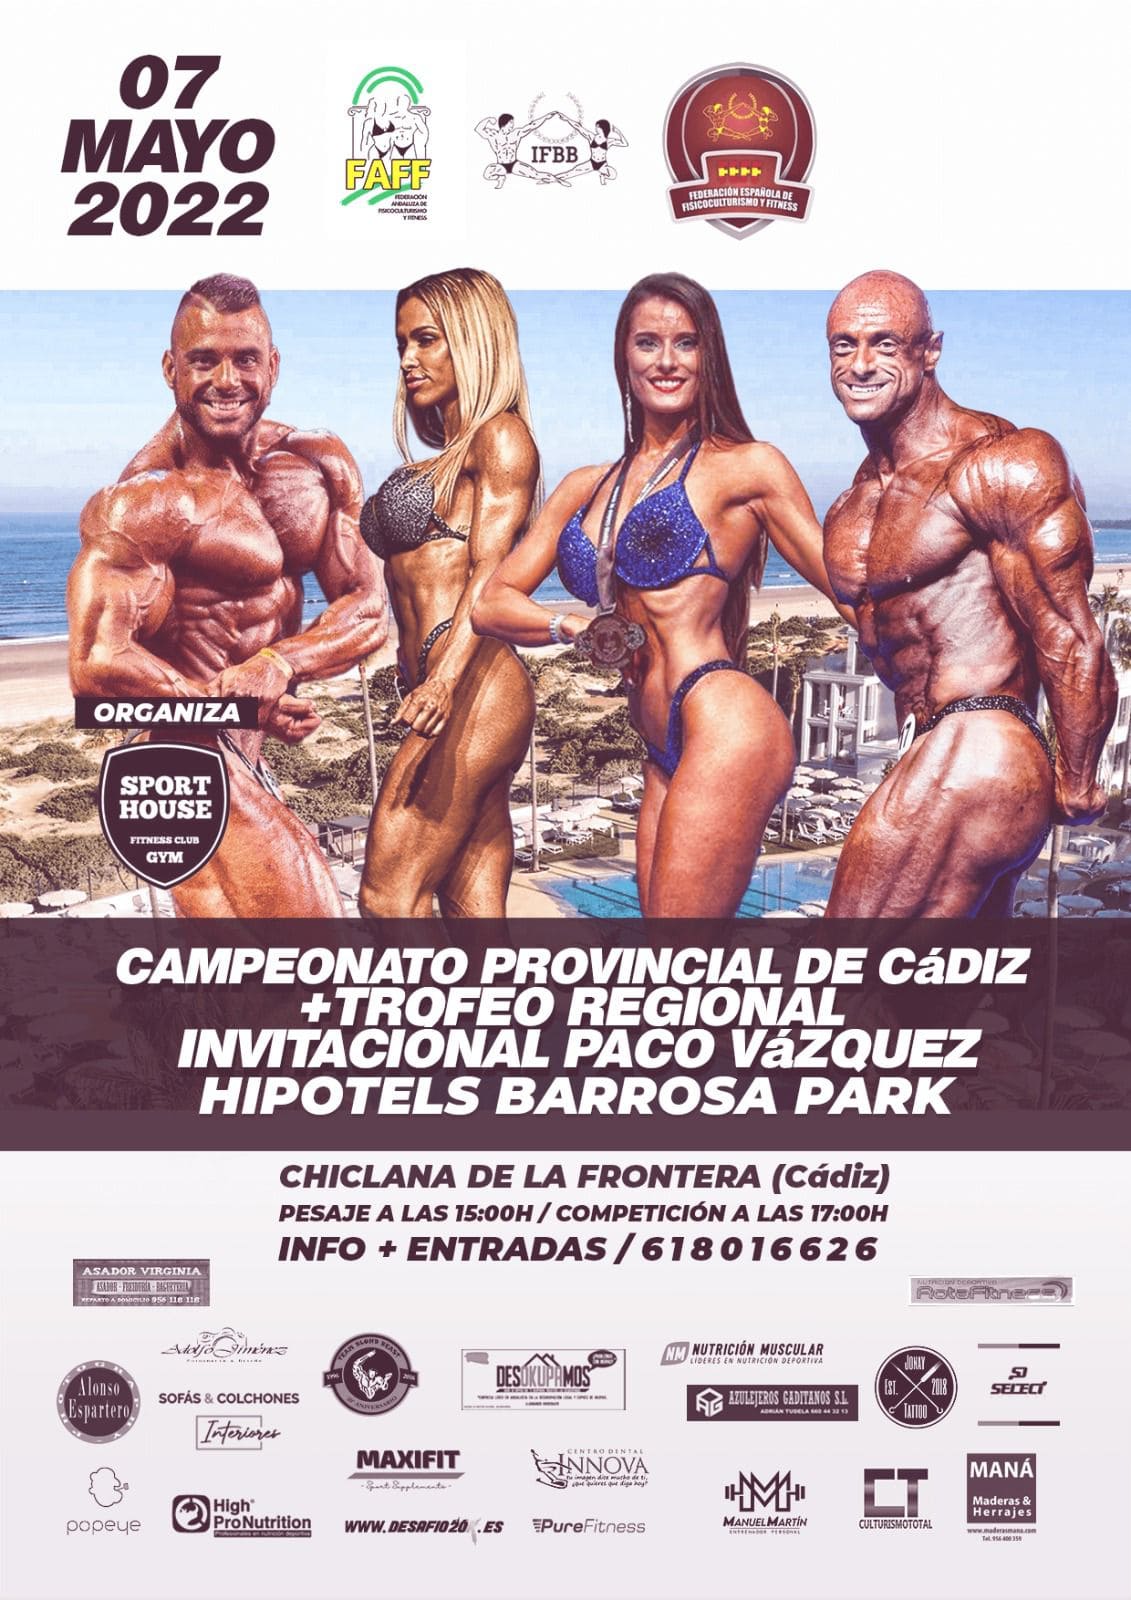 Campeonato Provincial de Cádiz